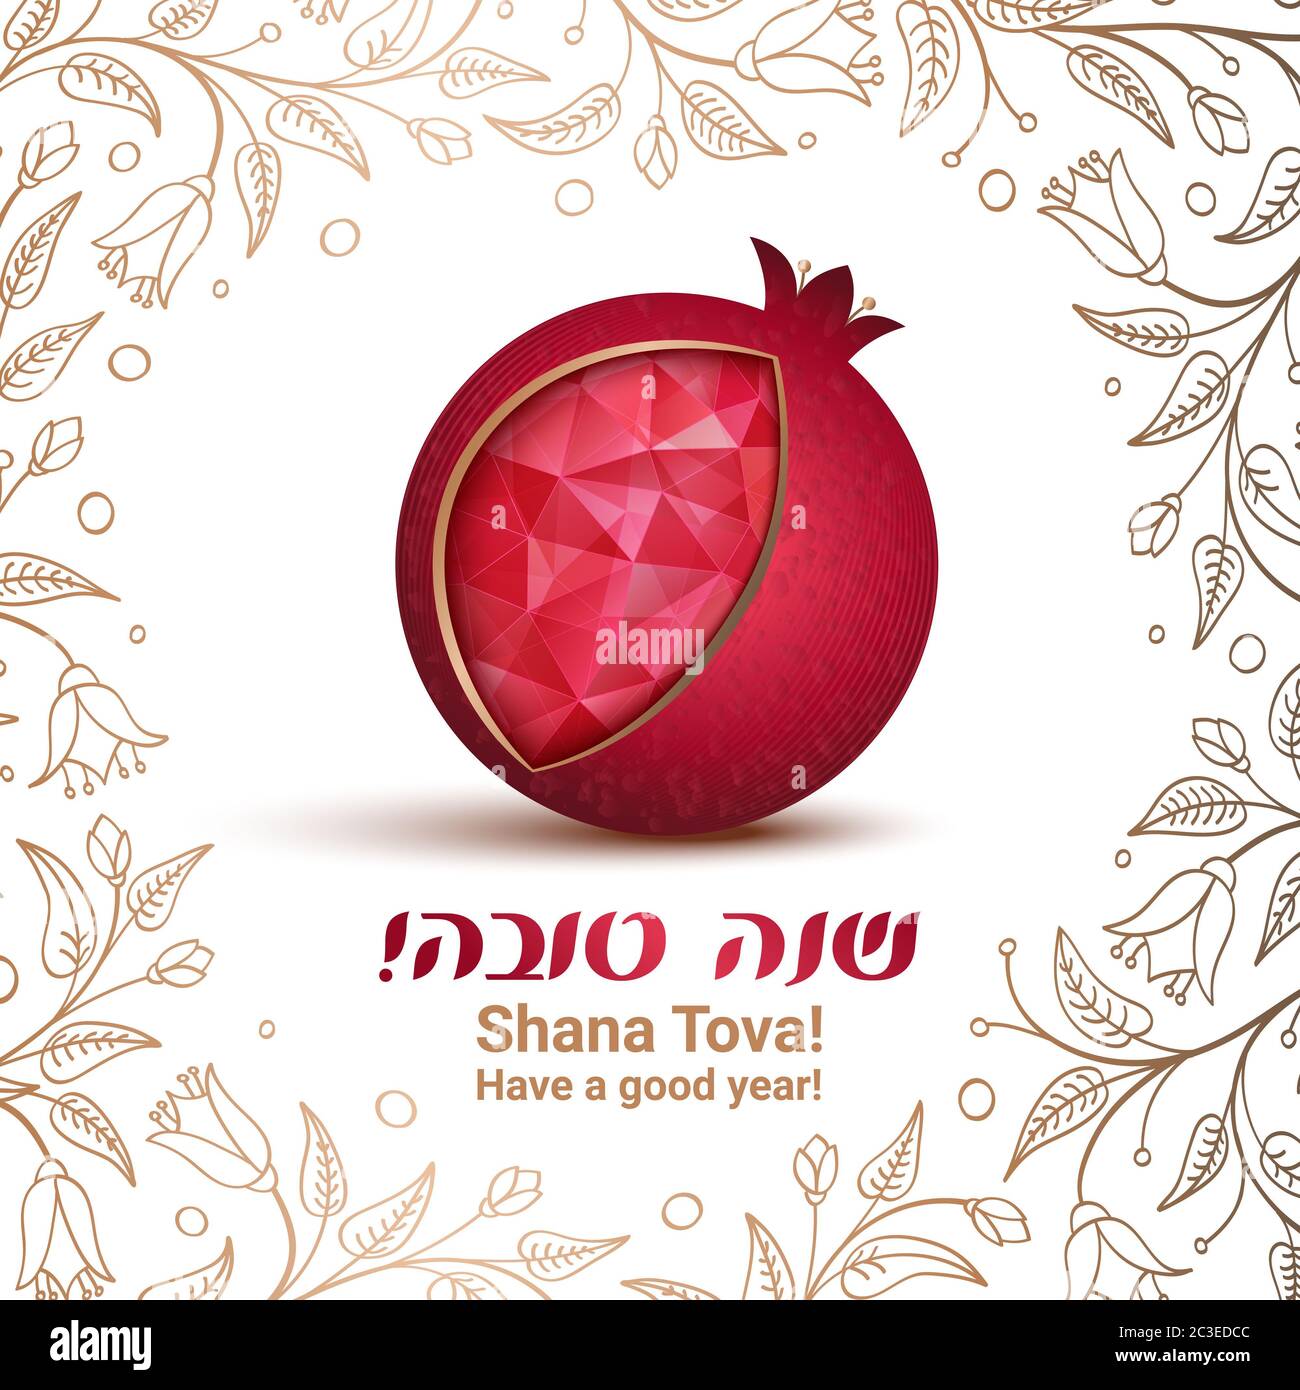 Rosh hashana card - Jewish New Year. Greeting text Shana tova on Hebrew - Have a sweet year. Pomegranate vector illustration. Pomegranate icon as a je Stock Photo